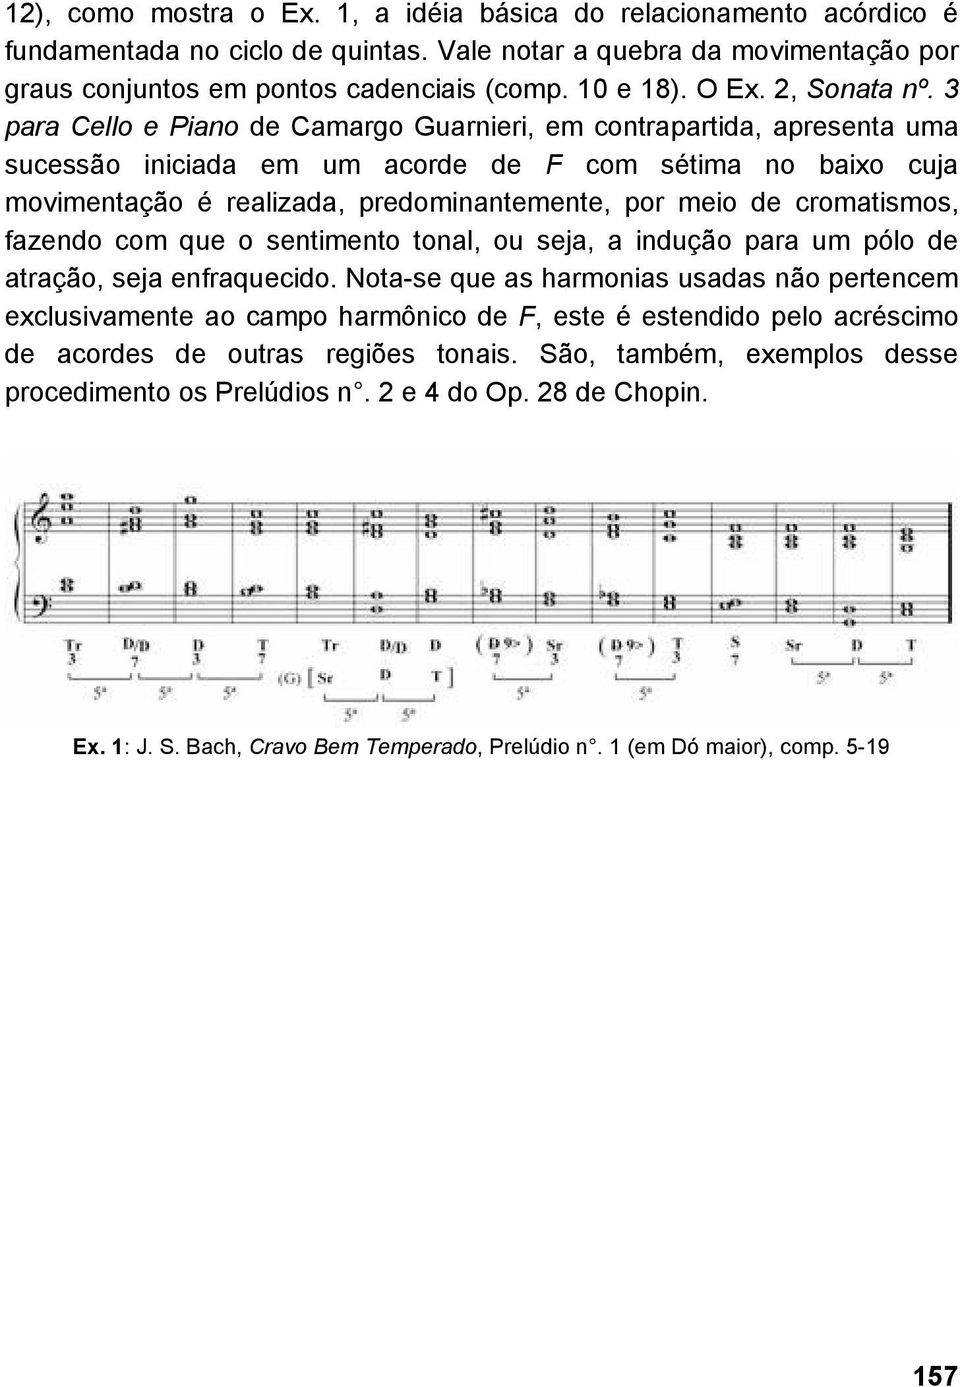 3 para Cello e Piano de Camargo Guarnieri, em contrapartida, apresenta uma sucessão iniciada em um acorde de F com sétima no baixo cuja movimentação é realizada, predominantemente, por meio de